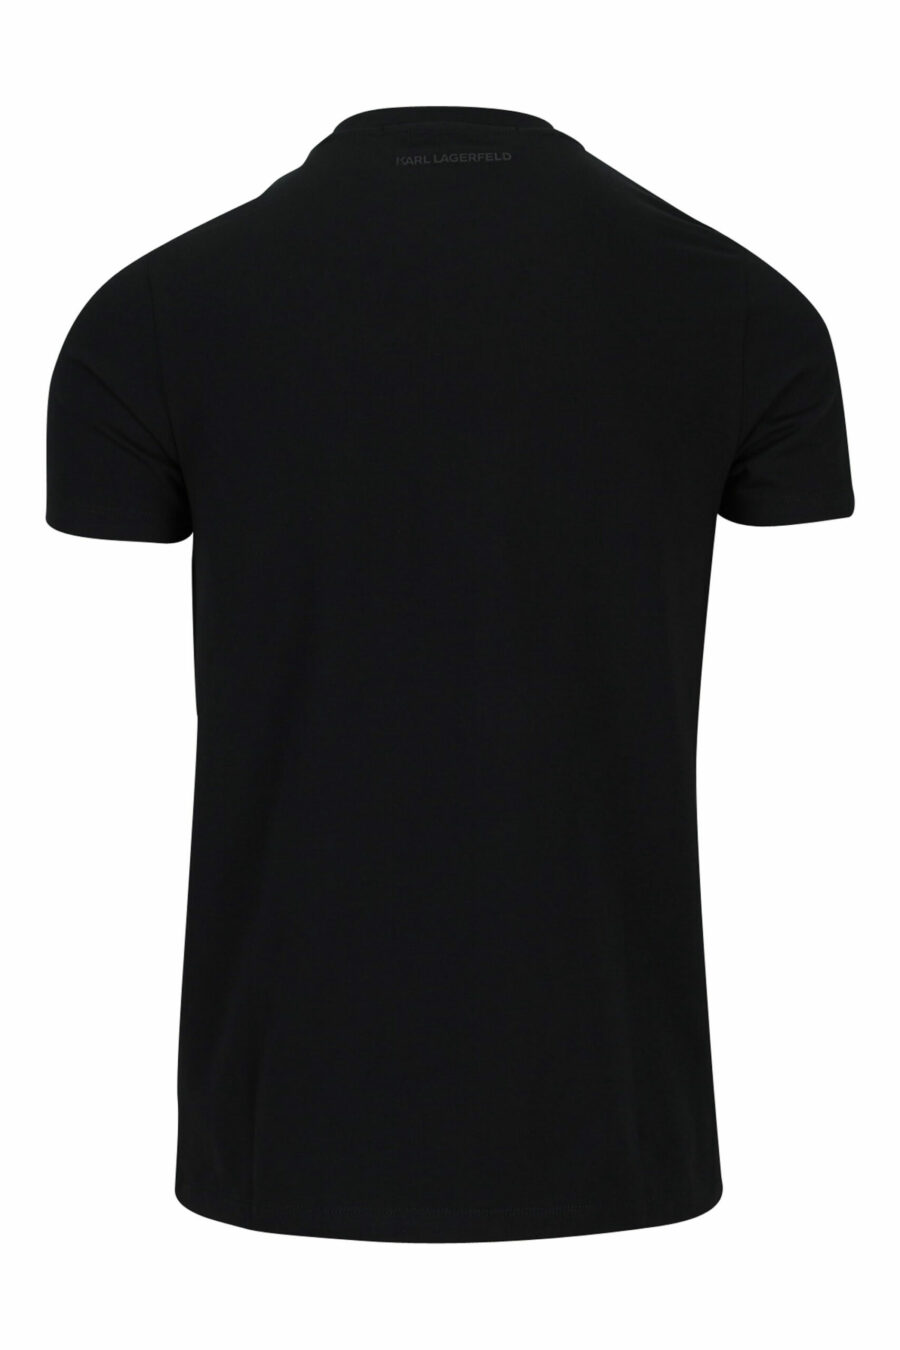 Camiseta negra con maxilogo "karl" dorado - 4062226681872 1 scaled